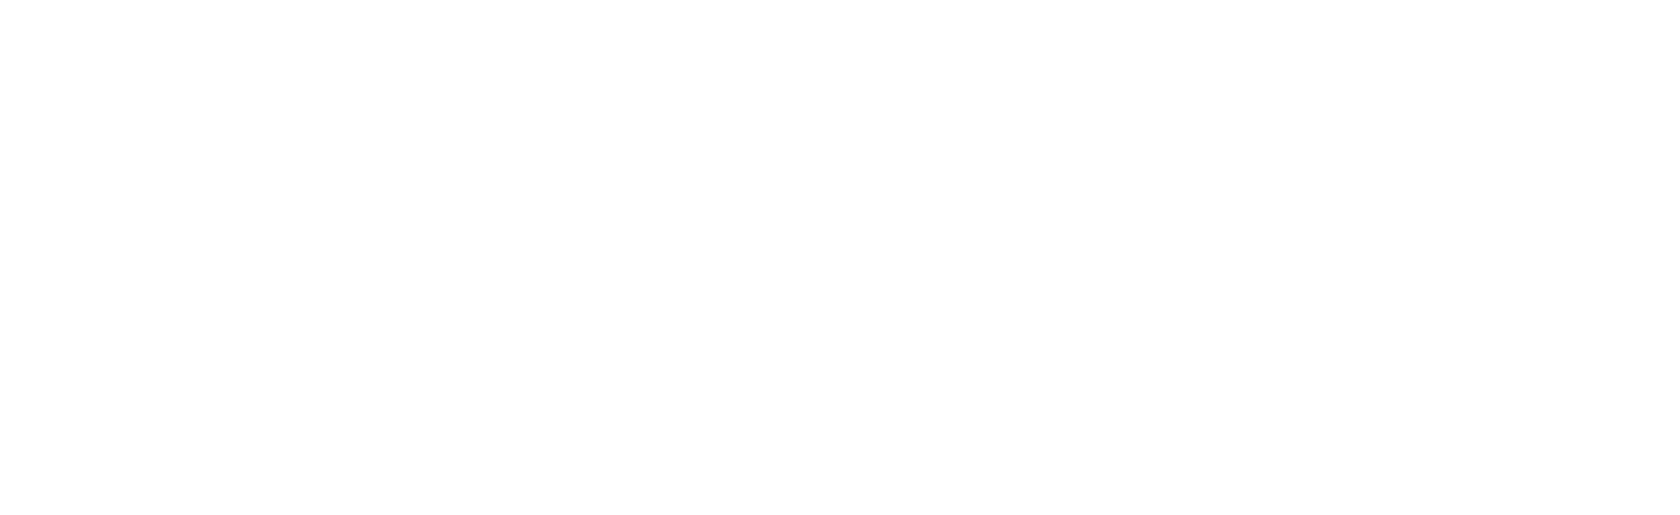 Торцевая заглушка Flexy TOREC LINE SLIM 30 для профилей Flexy: размер, вид, применение, способ монтажа в Москве, СПБ и России